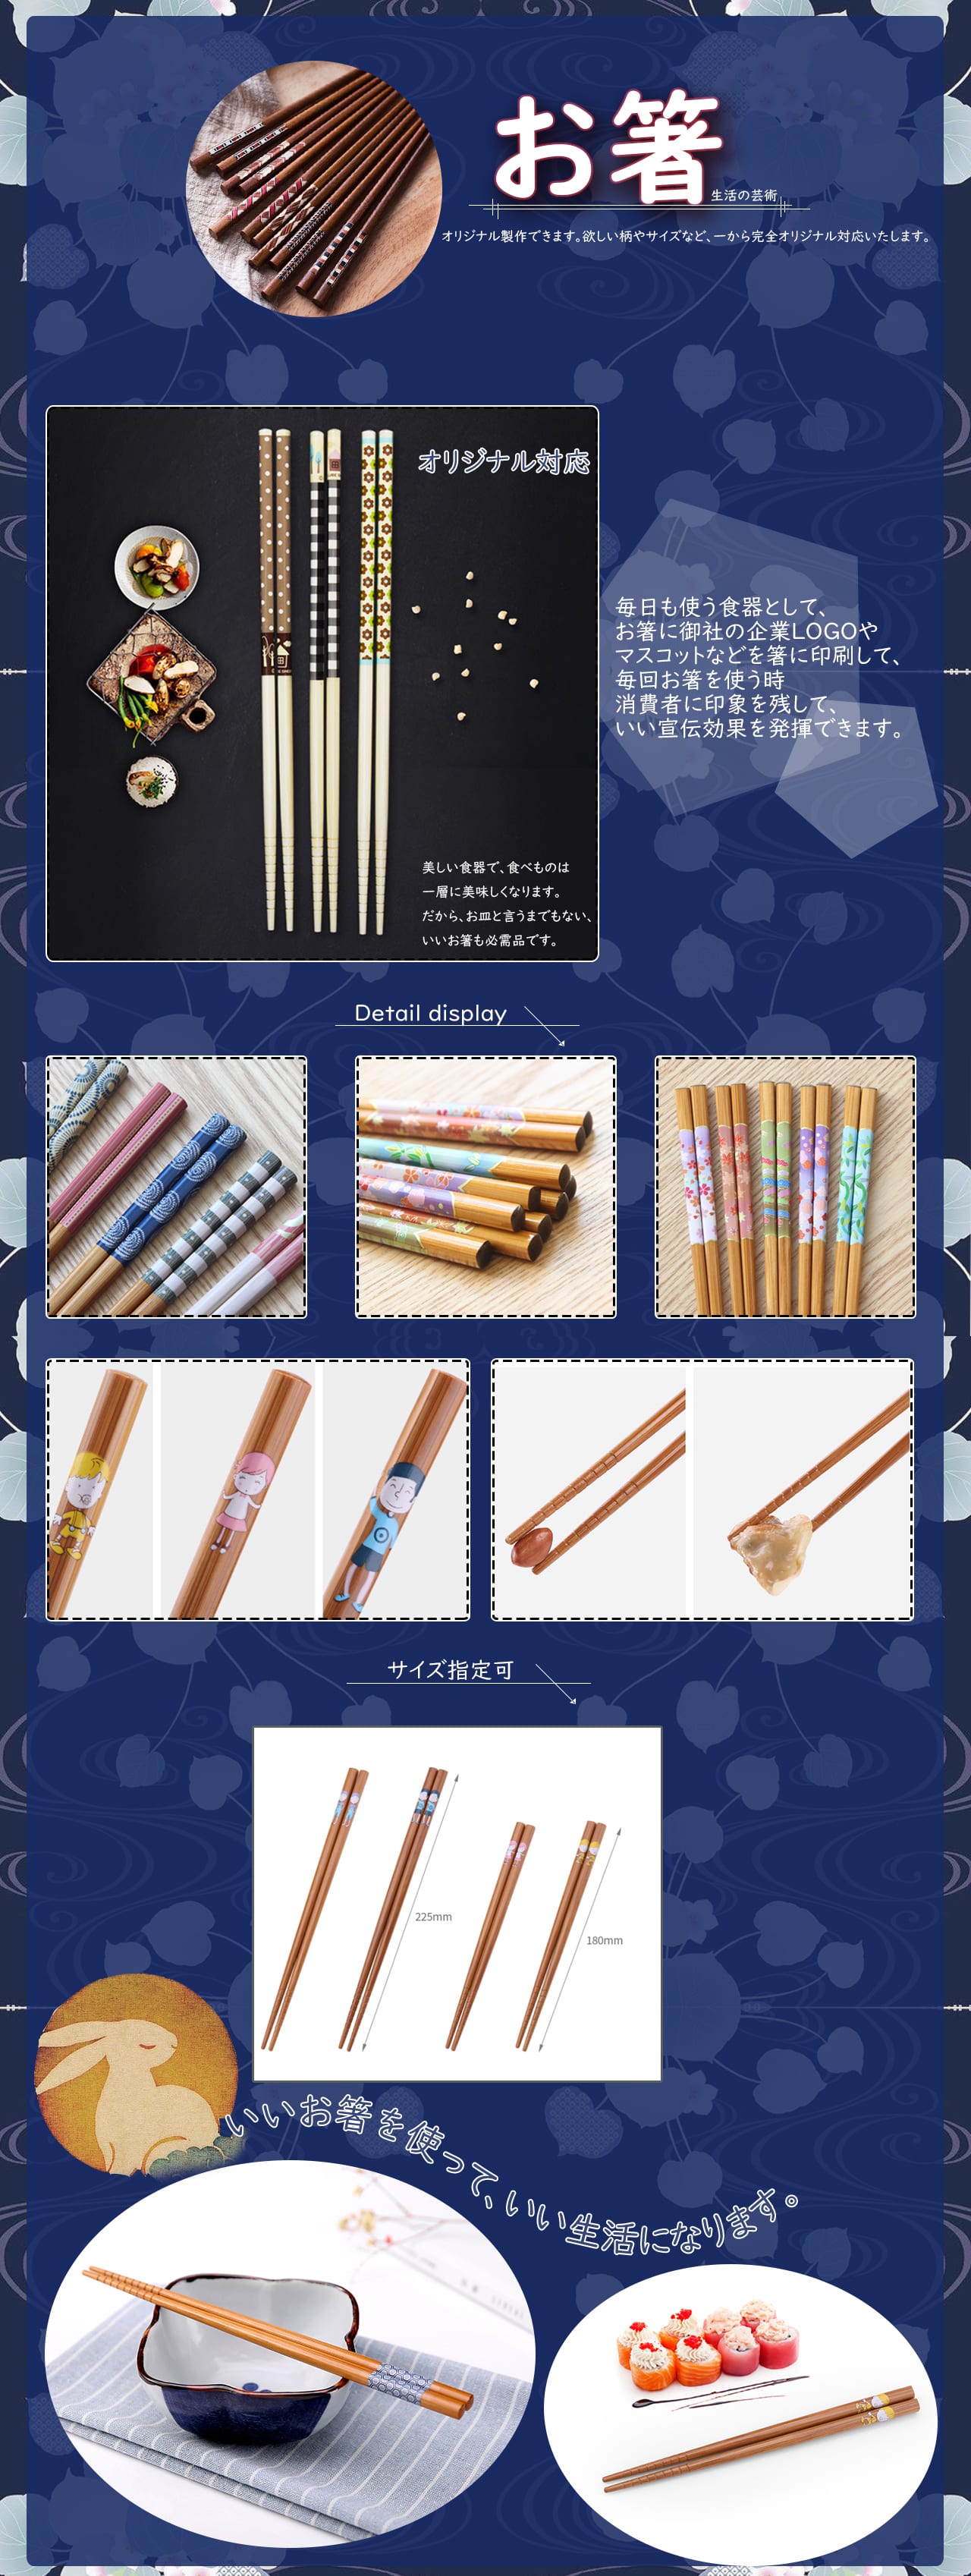 箸オリジナル製作のノベルティ製造